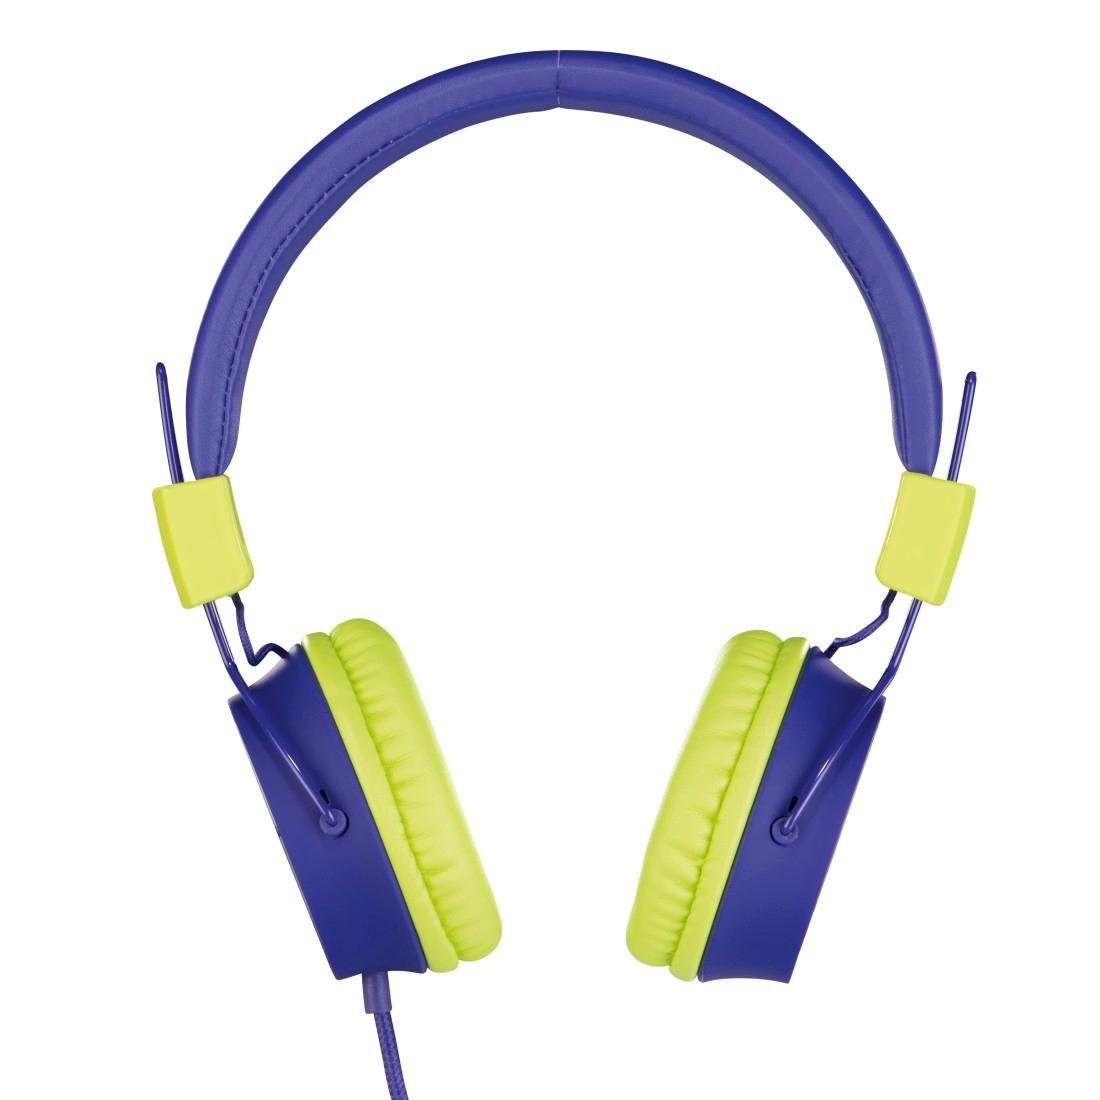 Thomson Kinderkopfhörer mit Kabel On-Ear, Lautstärkebegrenzung auf 85dB leicht On-Ear-Kopfhörer (größenverstellbar zusammenfaltbar, weiterer Kopfhöreranschluss möglich) blau | On-Ear-Kopfhörer